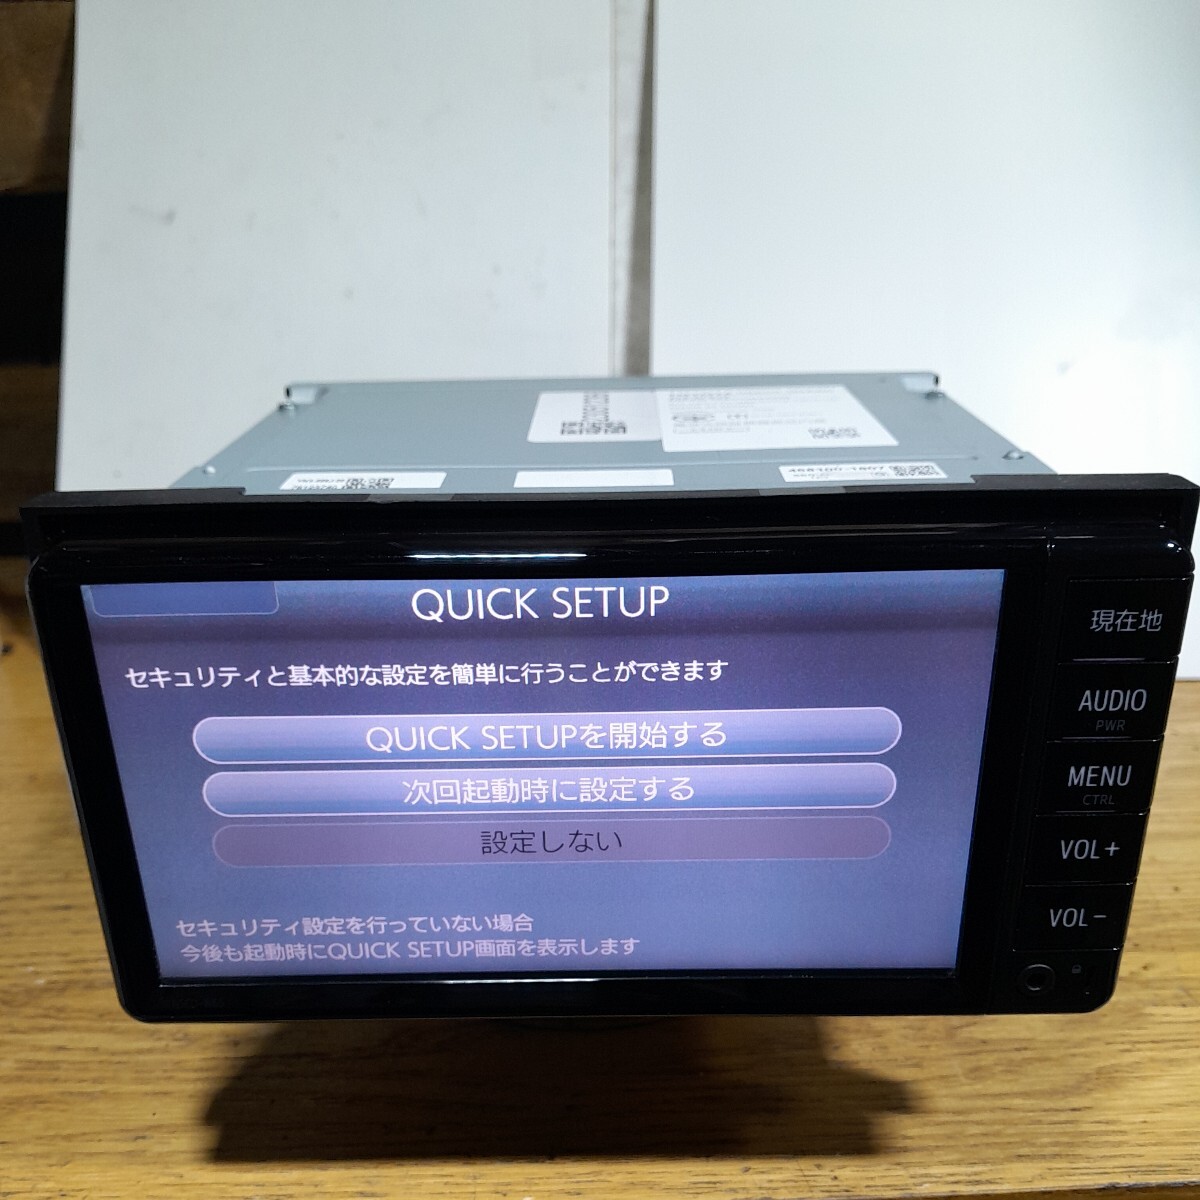  Toyota оригинальная навигация NSCD-W66( контрольный номер :23051236) карта данные SD карта отсутствует 